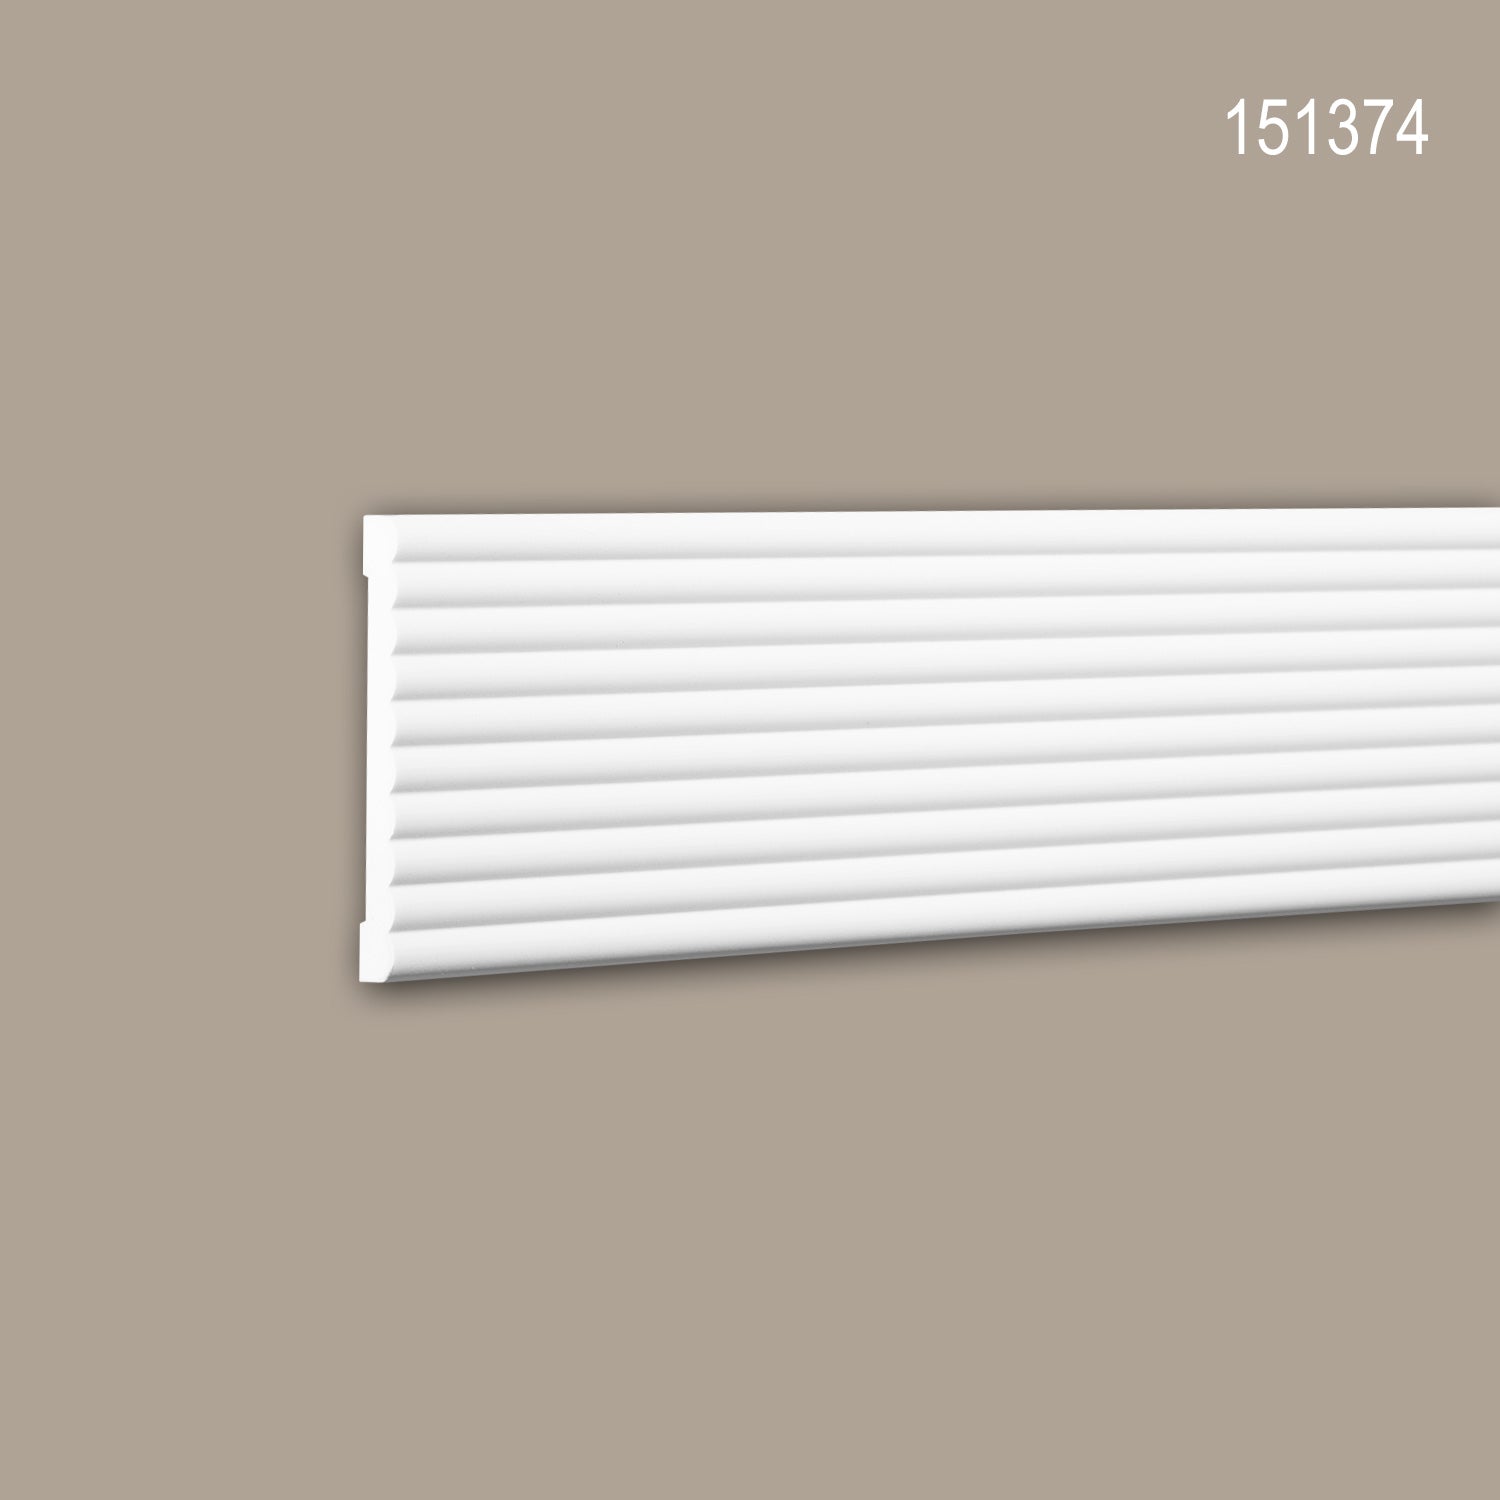 Stuhlschiene 151374 Profhome Zierleiste Friesleiste modernes Design weiß 2 m